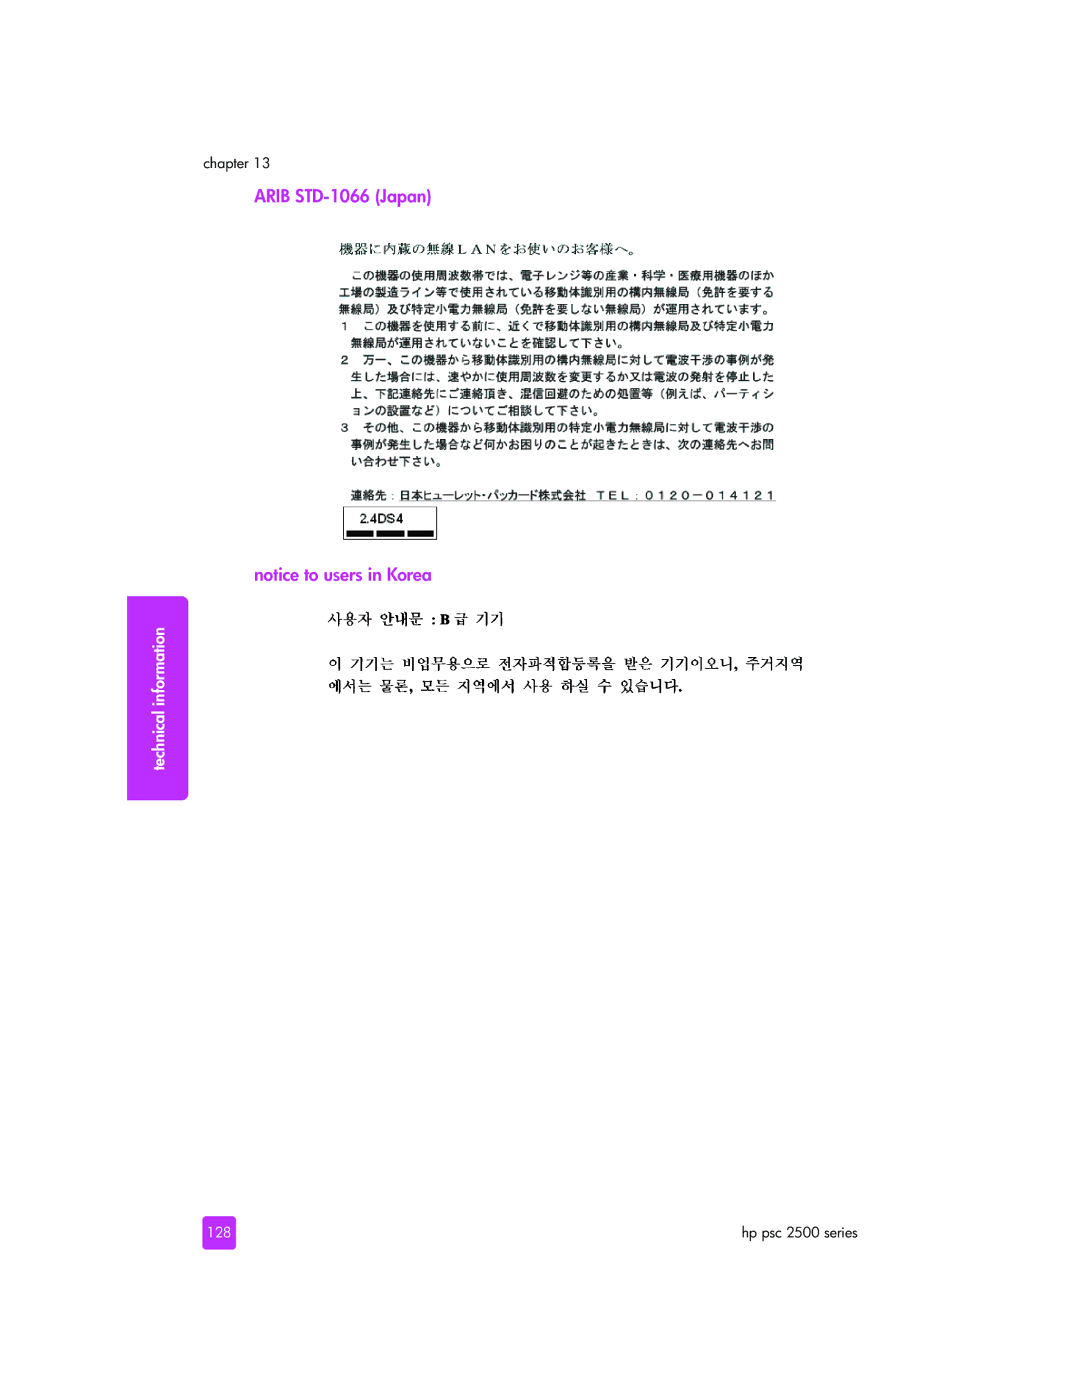 HP 2510xi manual Arib STD-1066 Japan, 128 